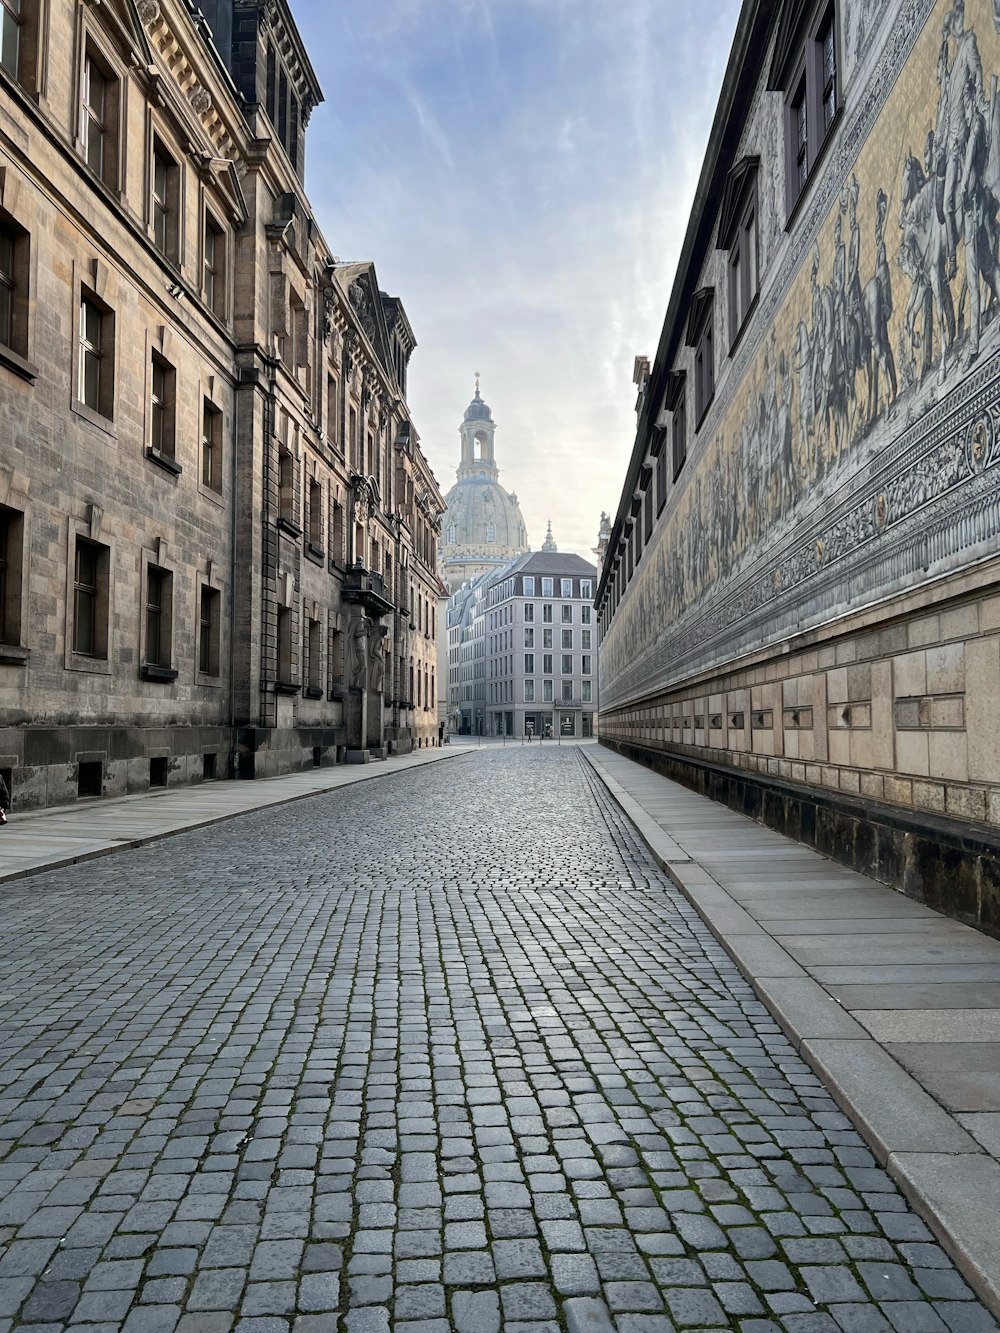 uma rua de paralelepípedos em uma cidade europeia